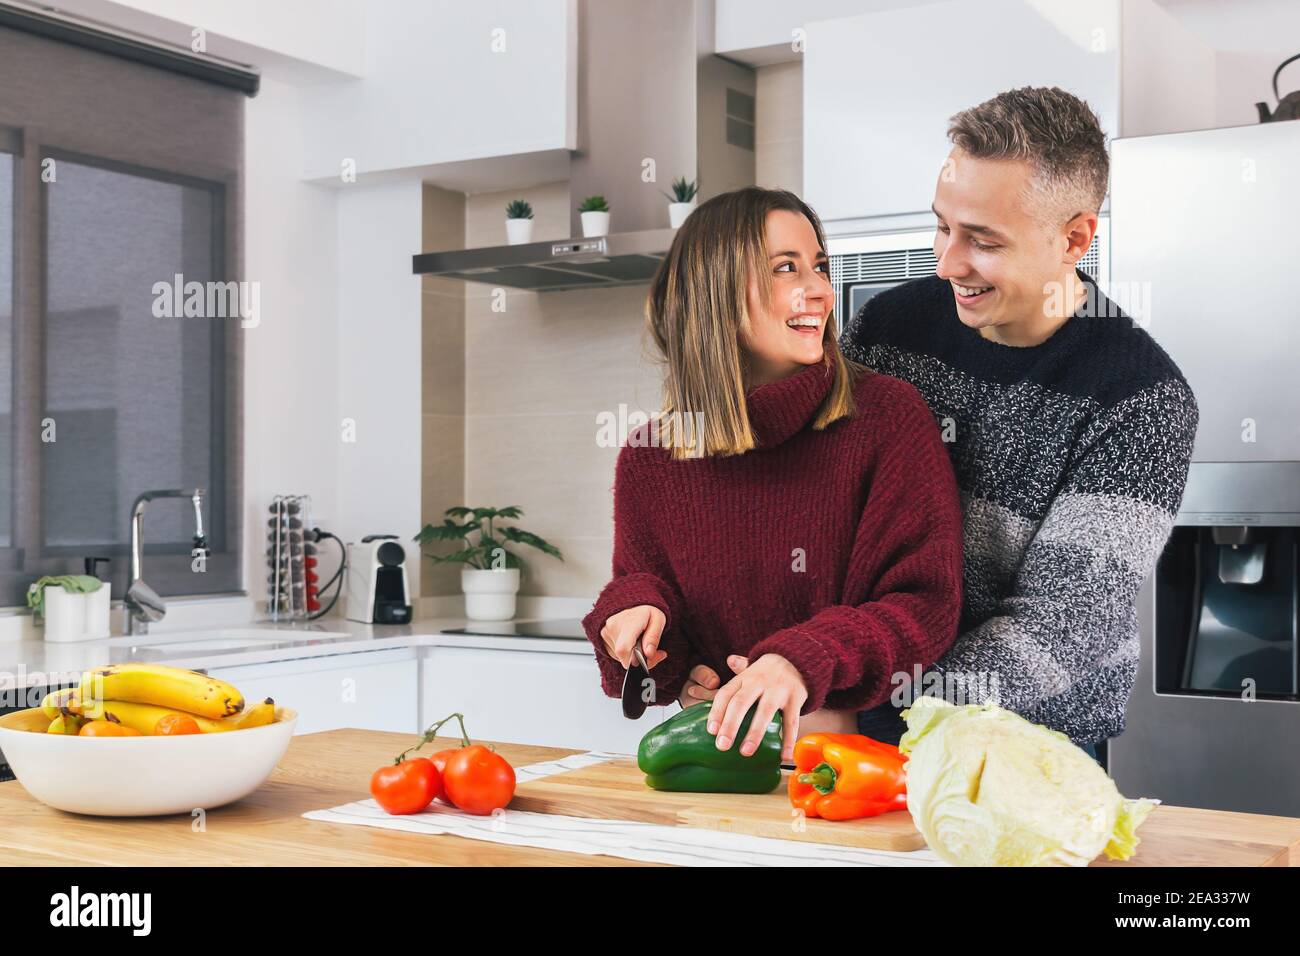 Retrato de una feliz pareja joven enamorada cocinando comida vegana juntos en una cocina moderna. Preparar comida saludable, cortar verduras Foto de stock